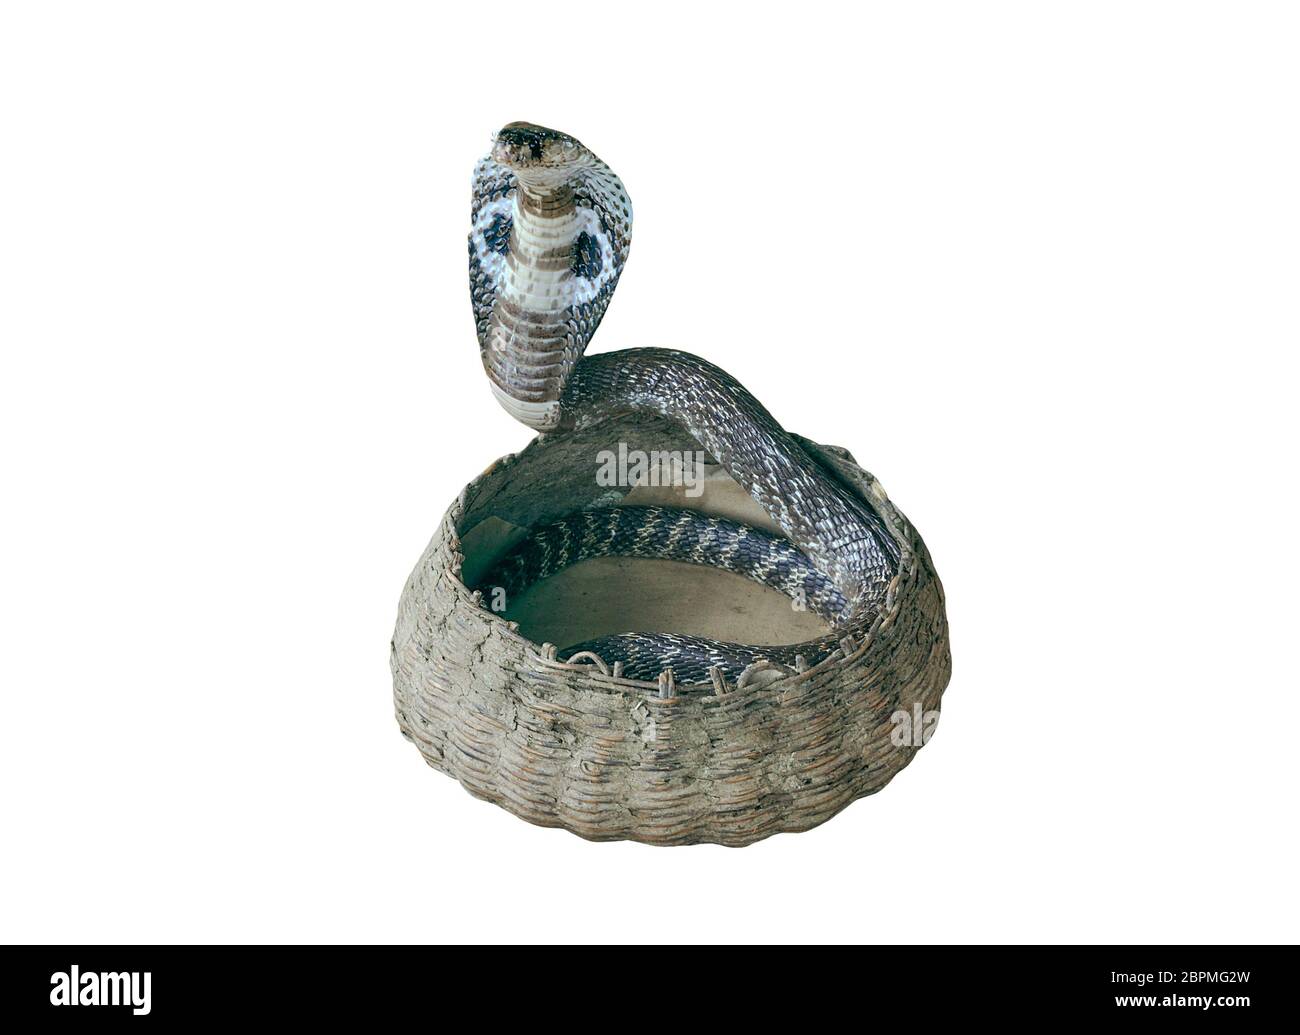 Cobra de serpent venimeux dans un panier tissé sur fond blanc Photo Stock -  Alamy